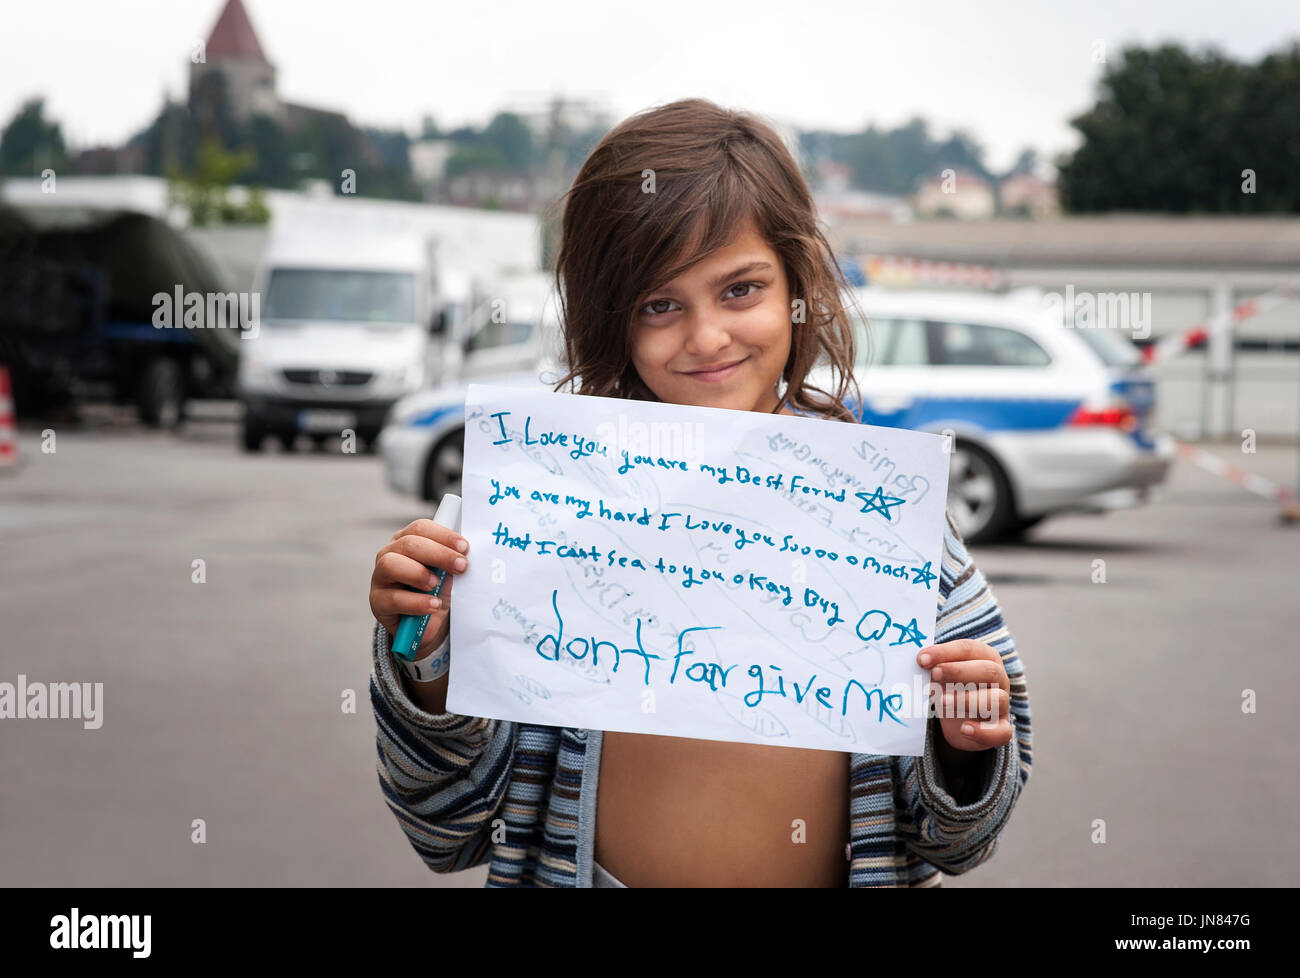 Passau, Allemagne - août 2th, 2015 : jeune fille de réfugiés d'Afghanistan nommé Nasila dans un camp de réfugiés à Passau qui demandent l'asile en Europe. Banque D'Images